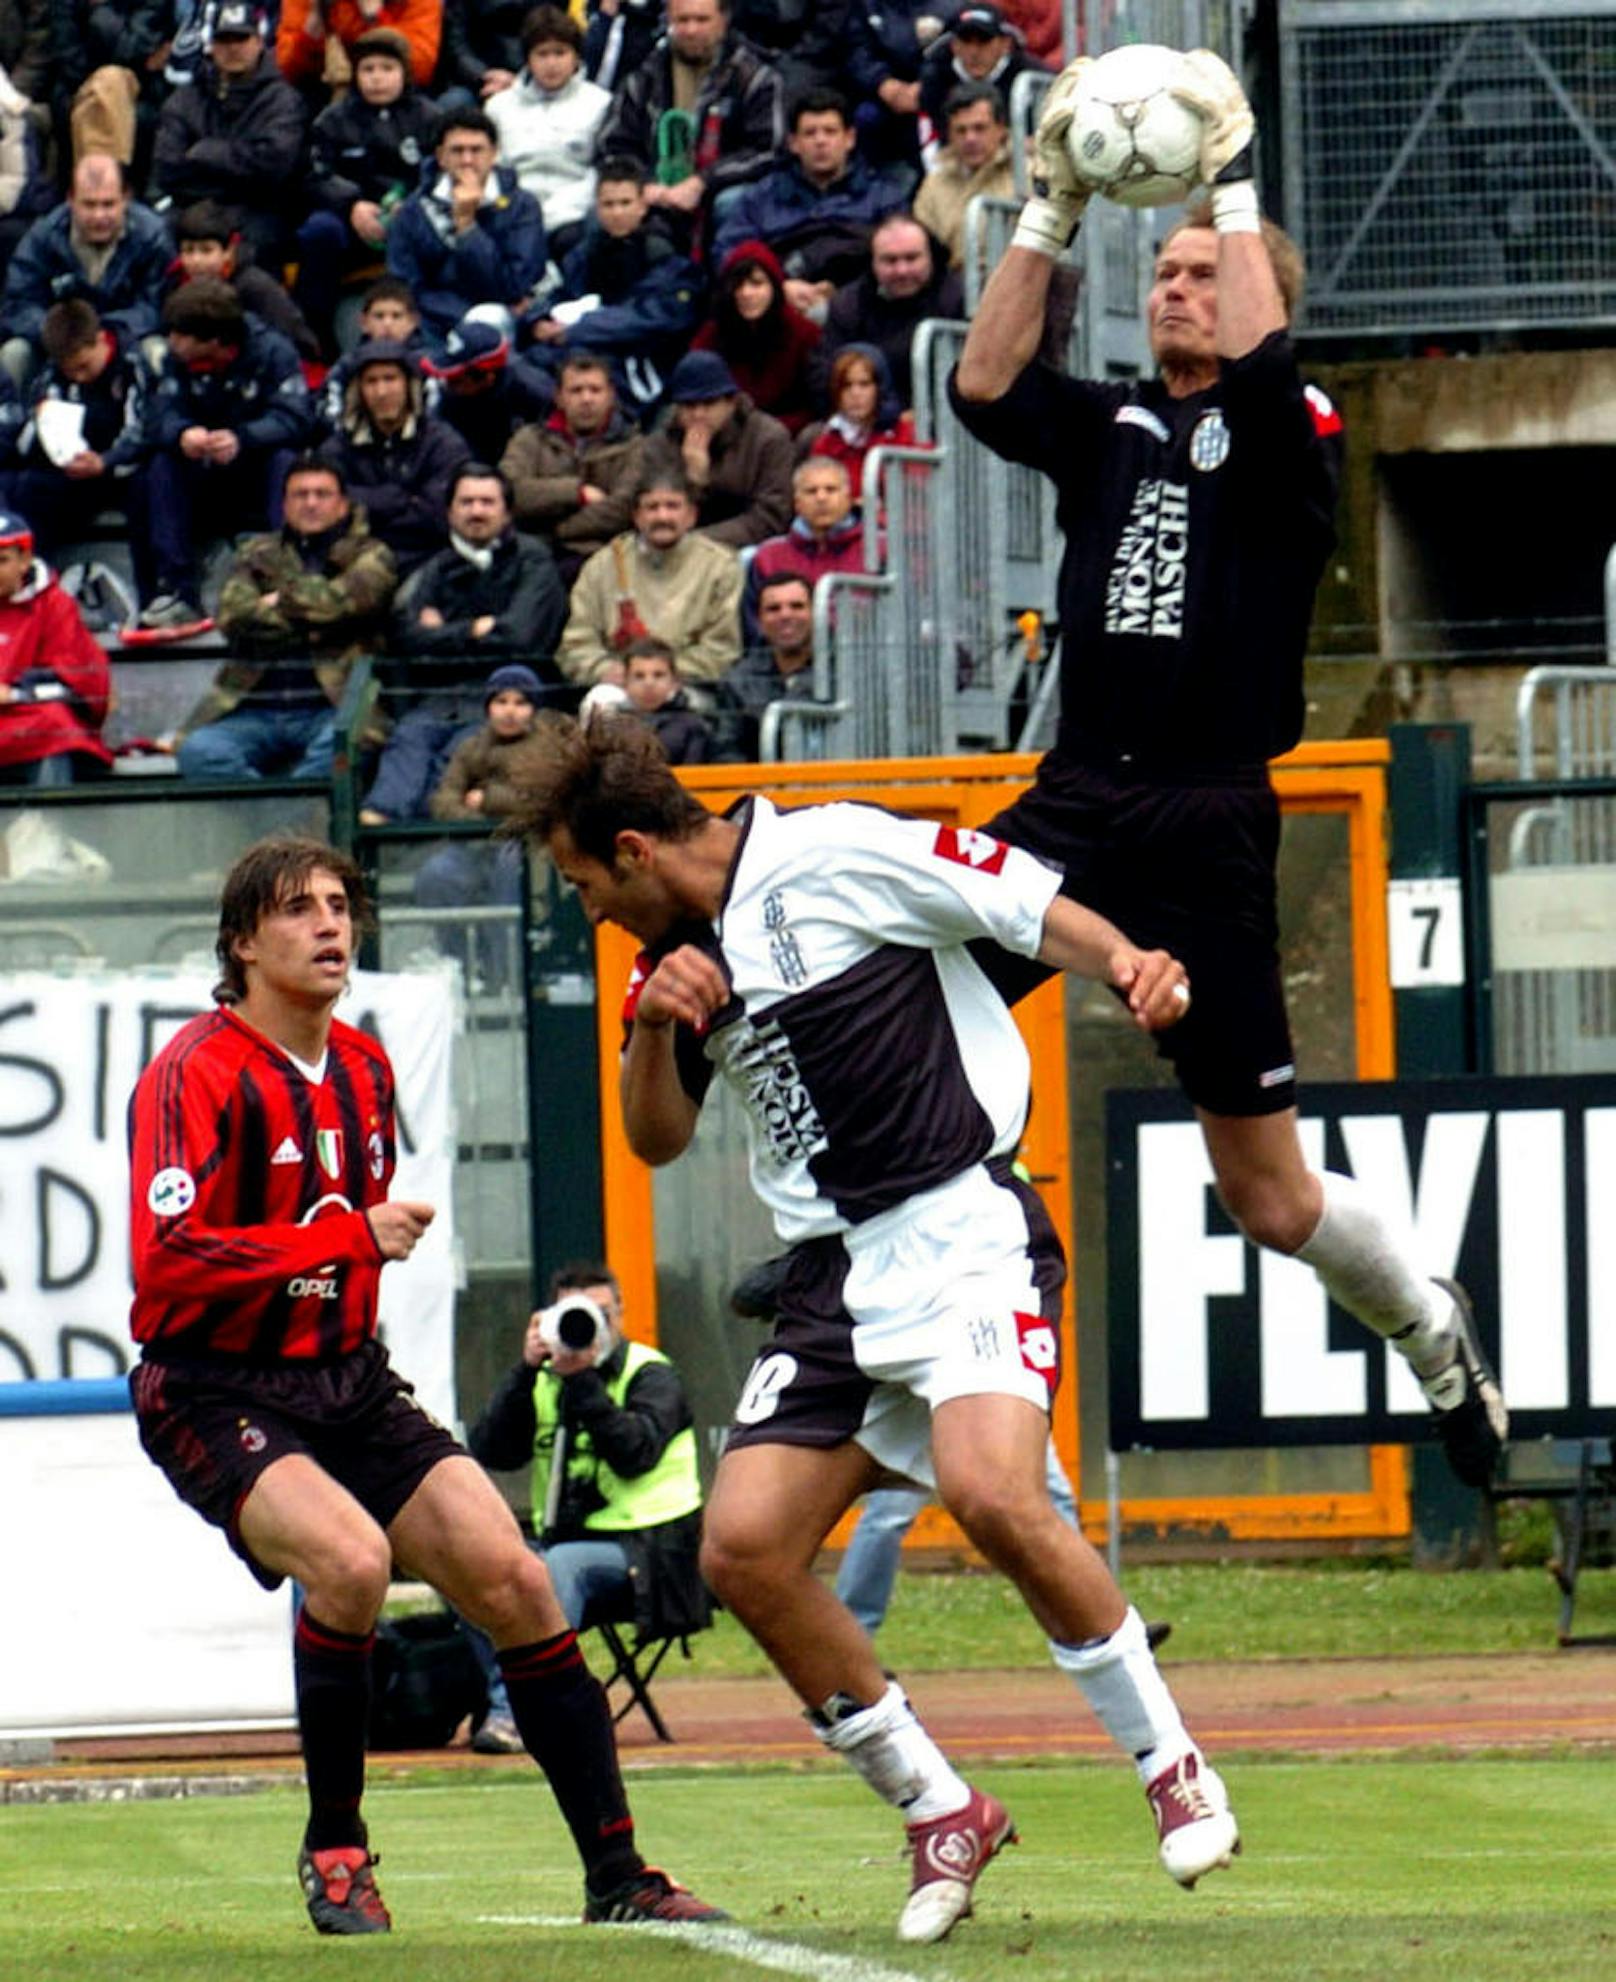 Die erste Krise in Manningers Karriere: Beim AC Turin und FC Bologna wurde der Keeper nicht glücklich. Erst beim AC Siena kam Manninger in der Saison 2004/05 wieder zu regelmäßigen Einsätzen.